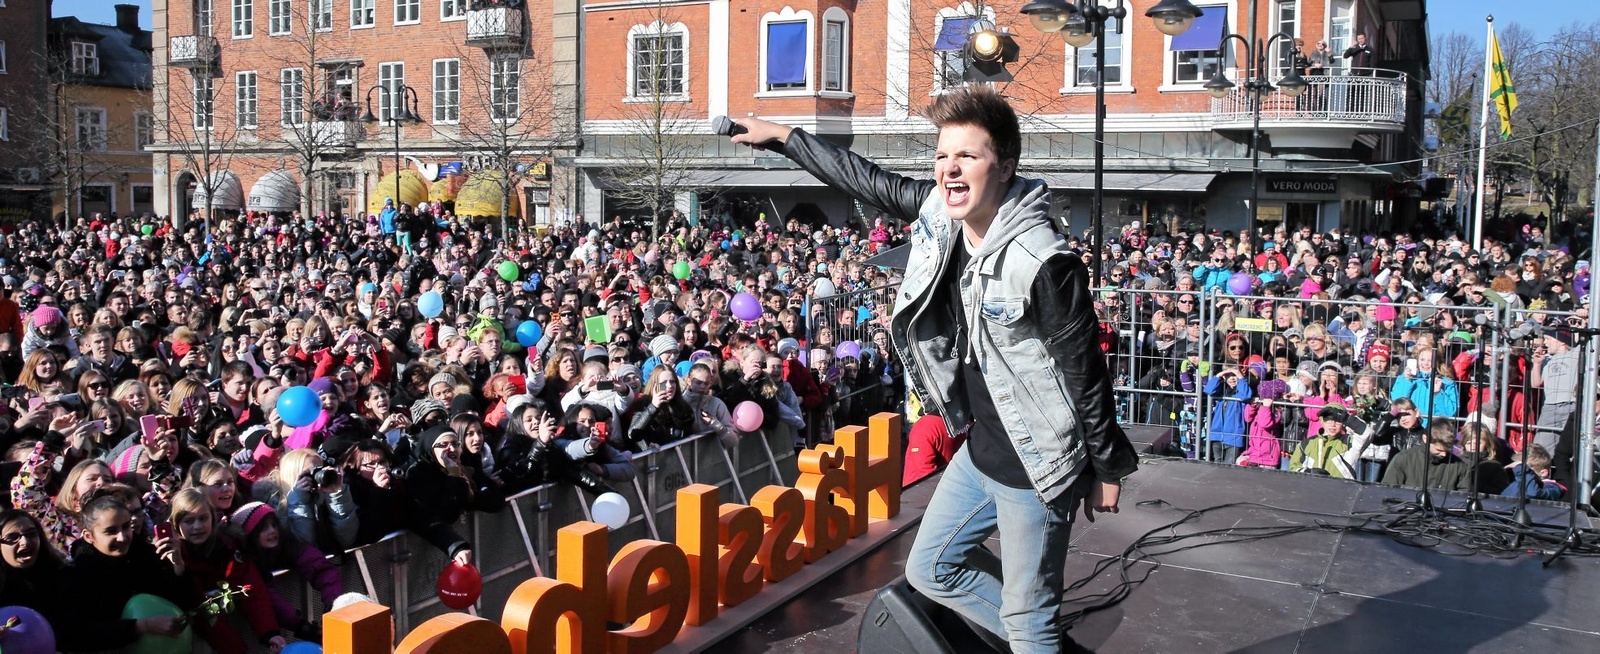 2013 fyllde Robin Stortorget, efter sin seger i Melodifestivalen. På lördag spelar han här igen.Foto: Stefan Sandström/arkiv